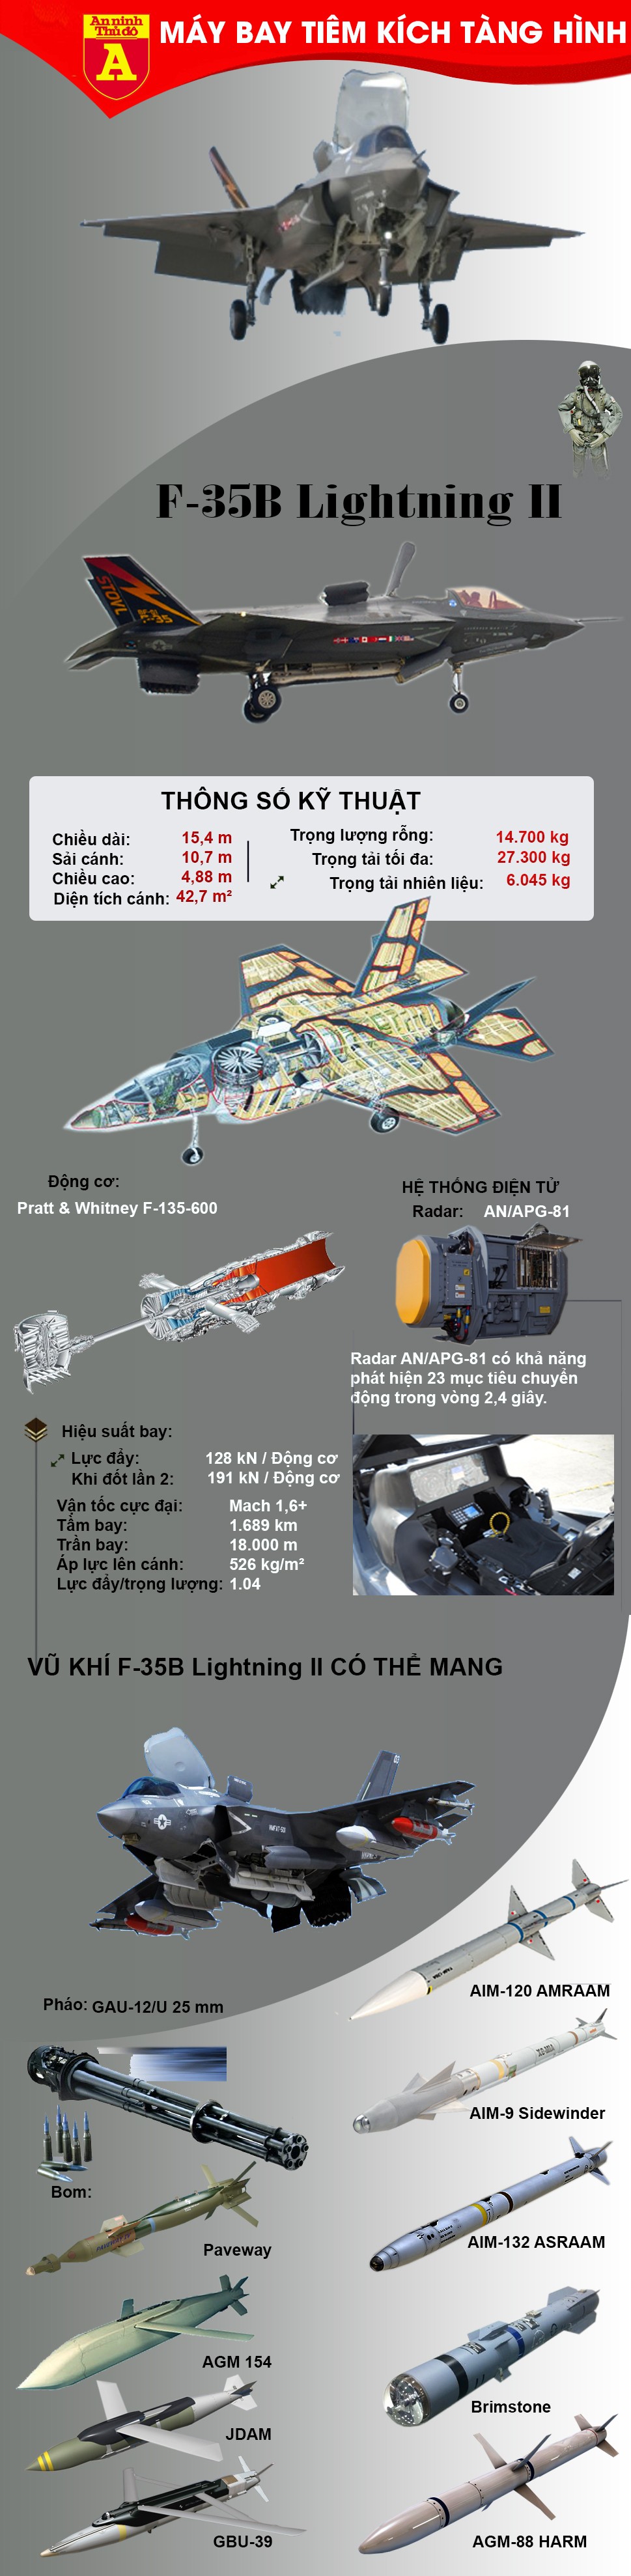 [Infographic] Tiêm kích tàng hình F-35B lần đầu mang bom, sức mạnh hủy diệt mang tên "Tia chớp" đã sẵn sàng ảnh 4